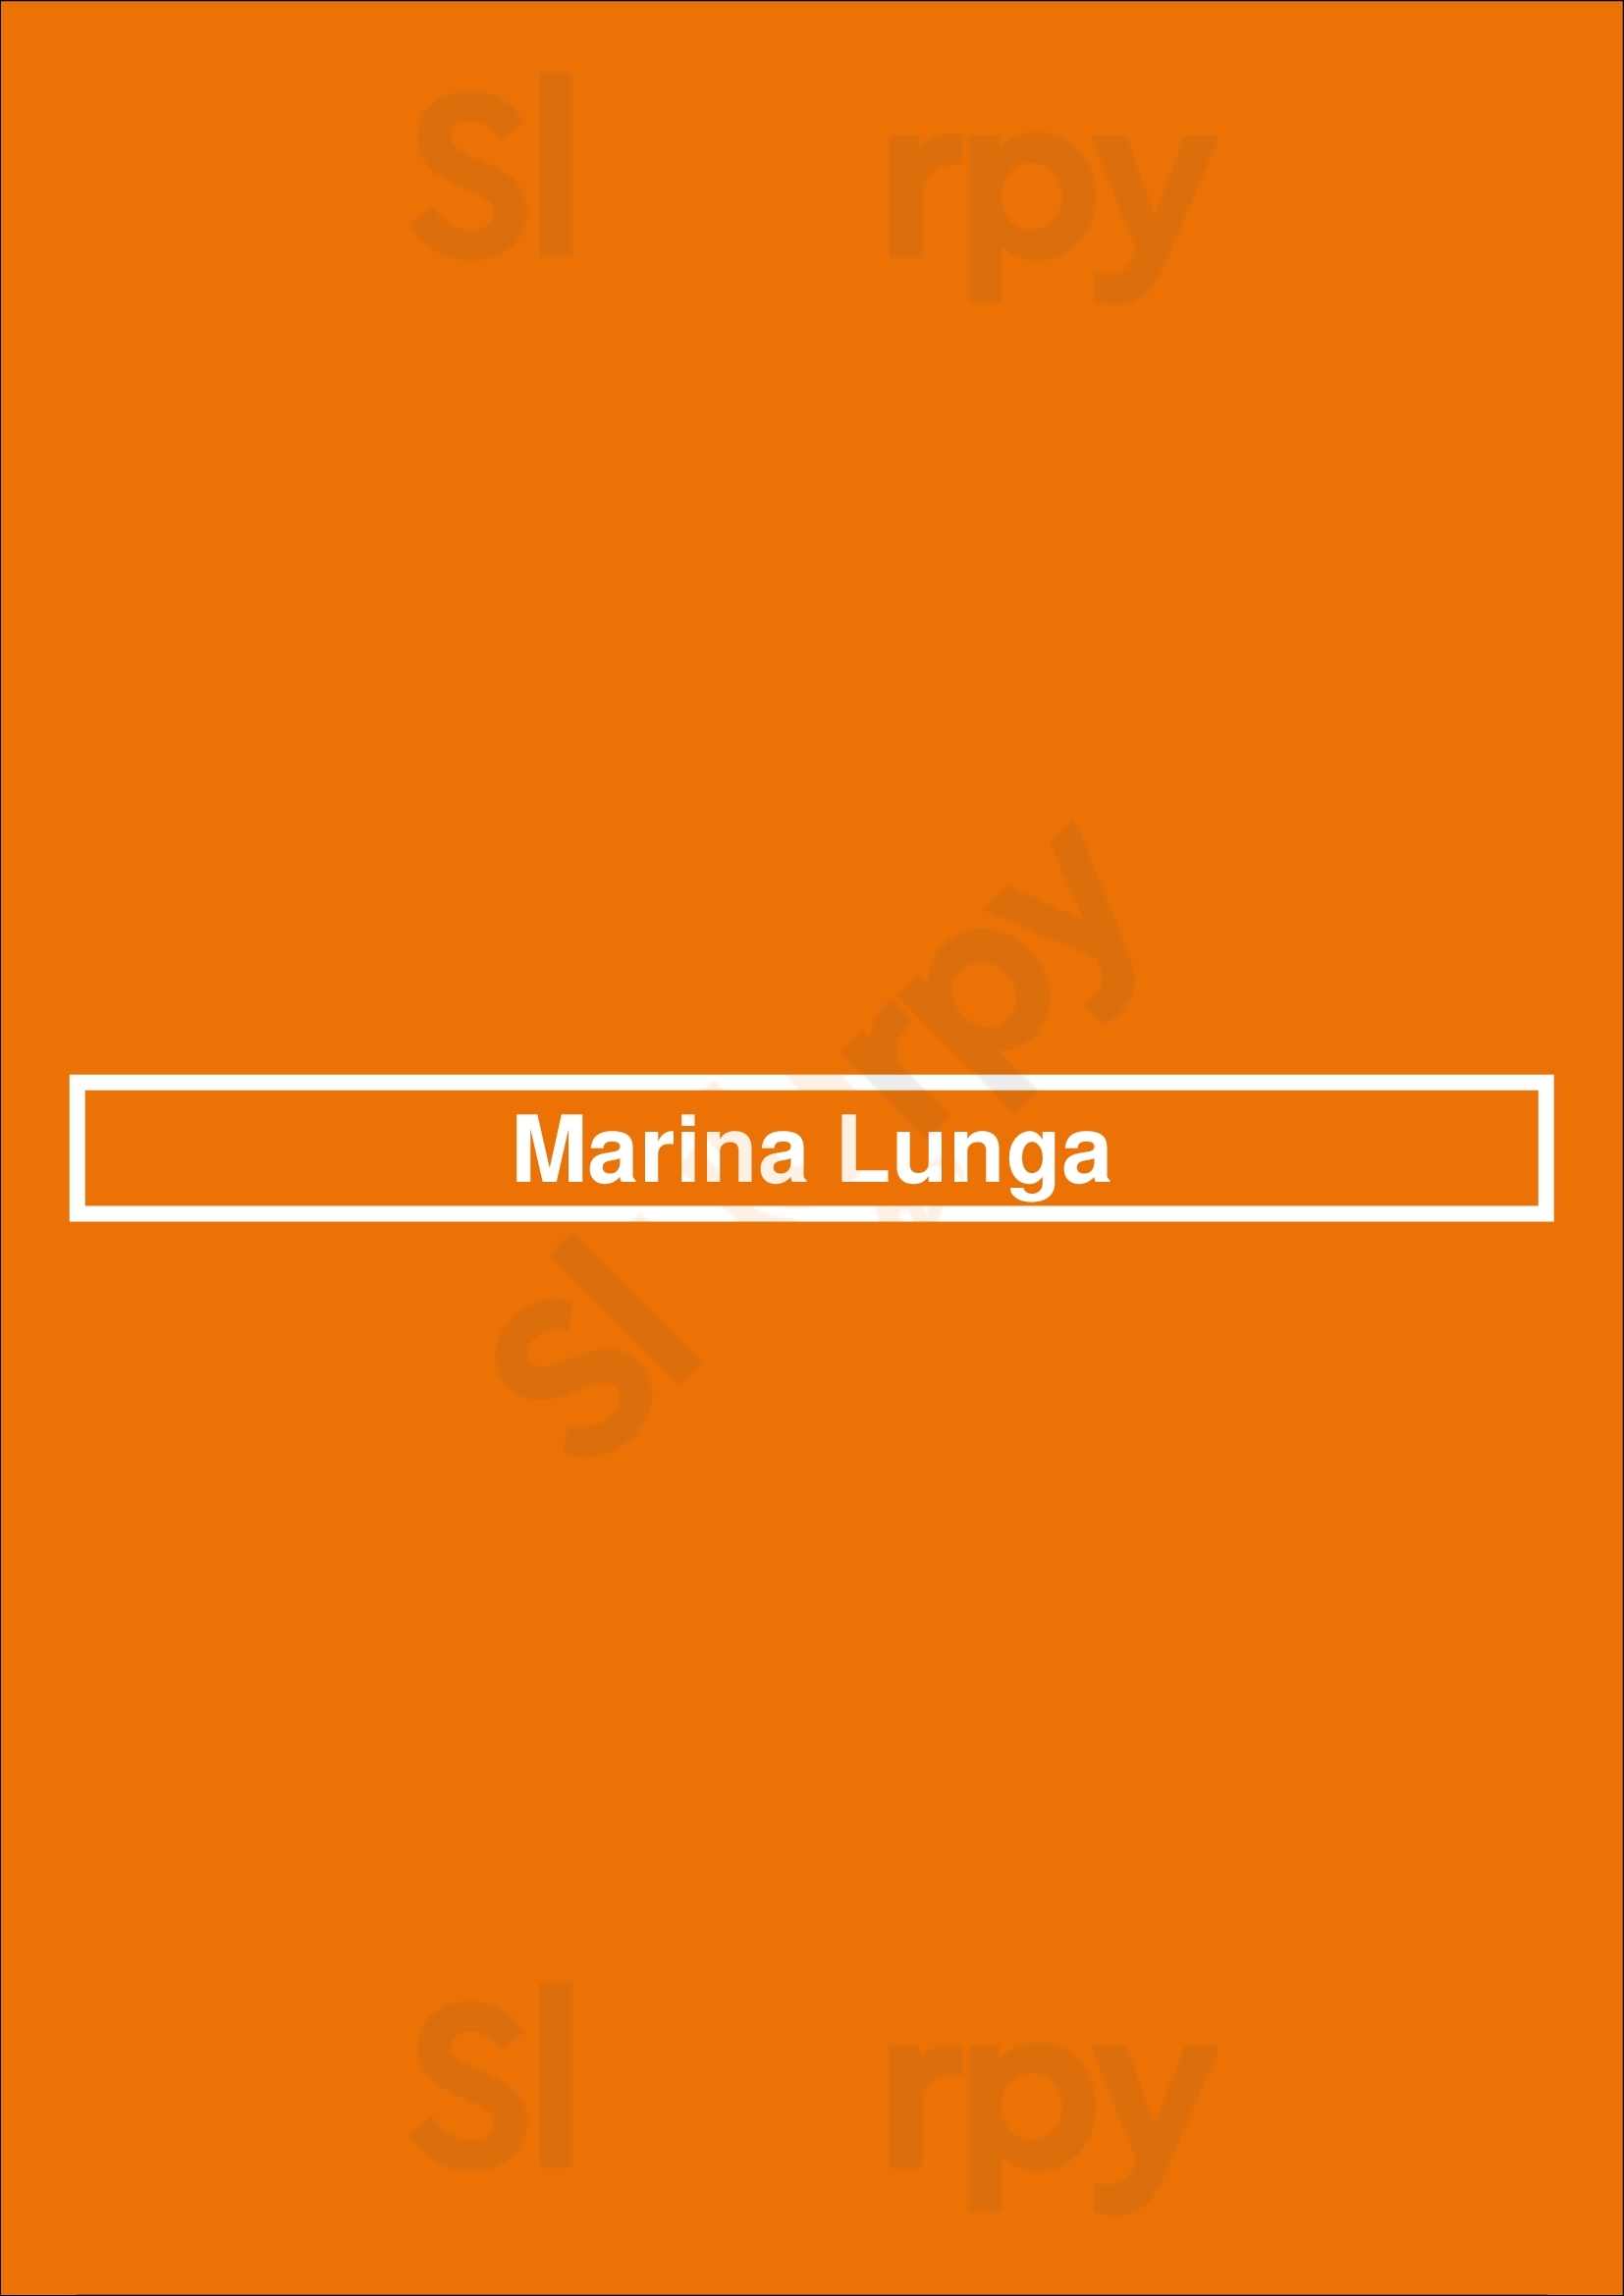 Marina Lunga Balmain Menu - 1